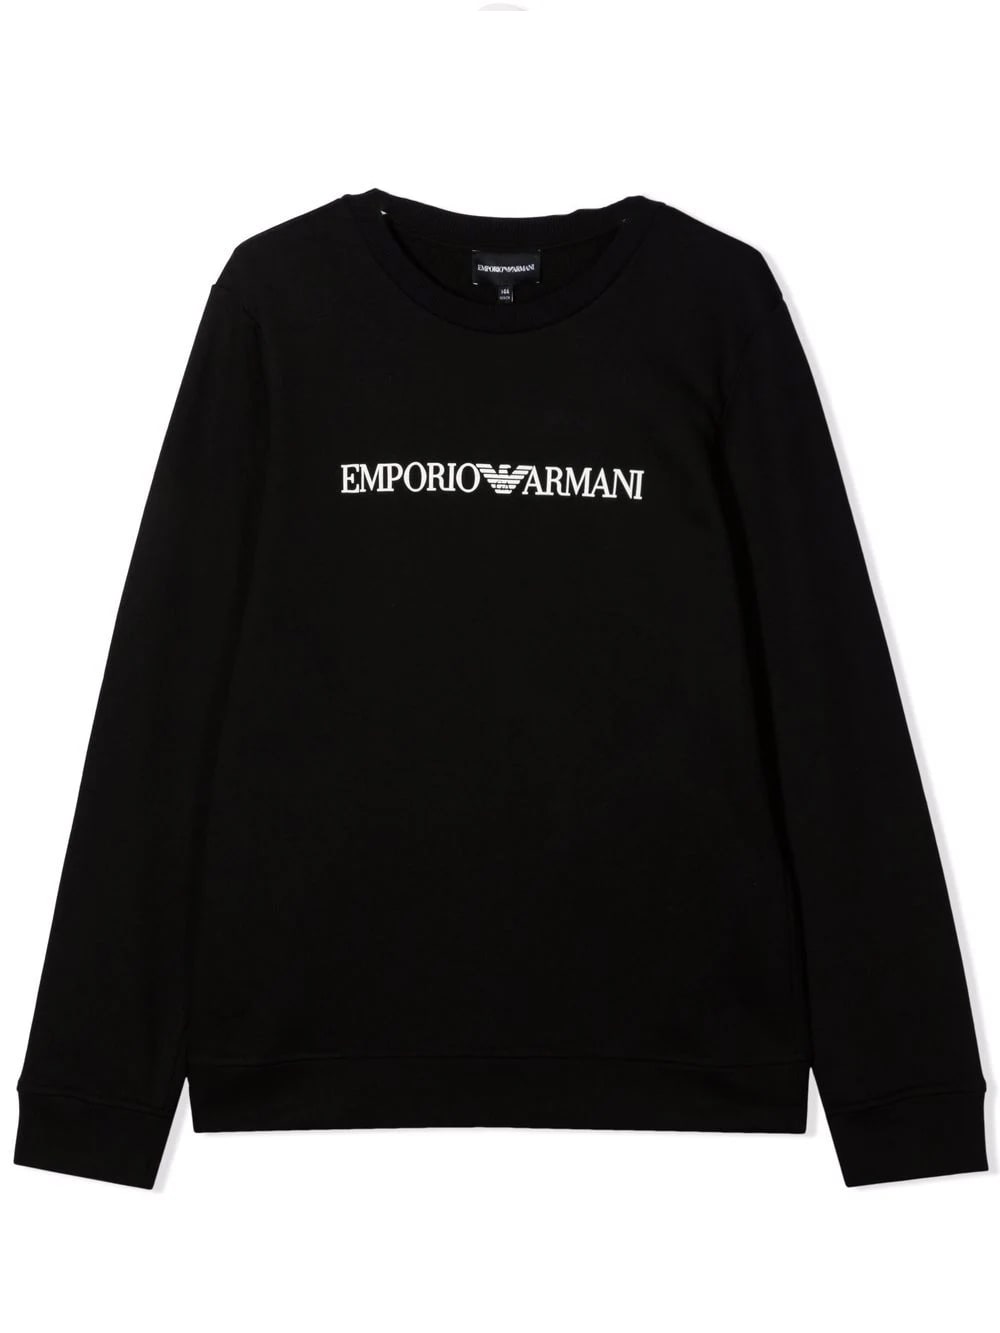 Emporio Armani Crewneck Sweatshirt With Print